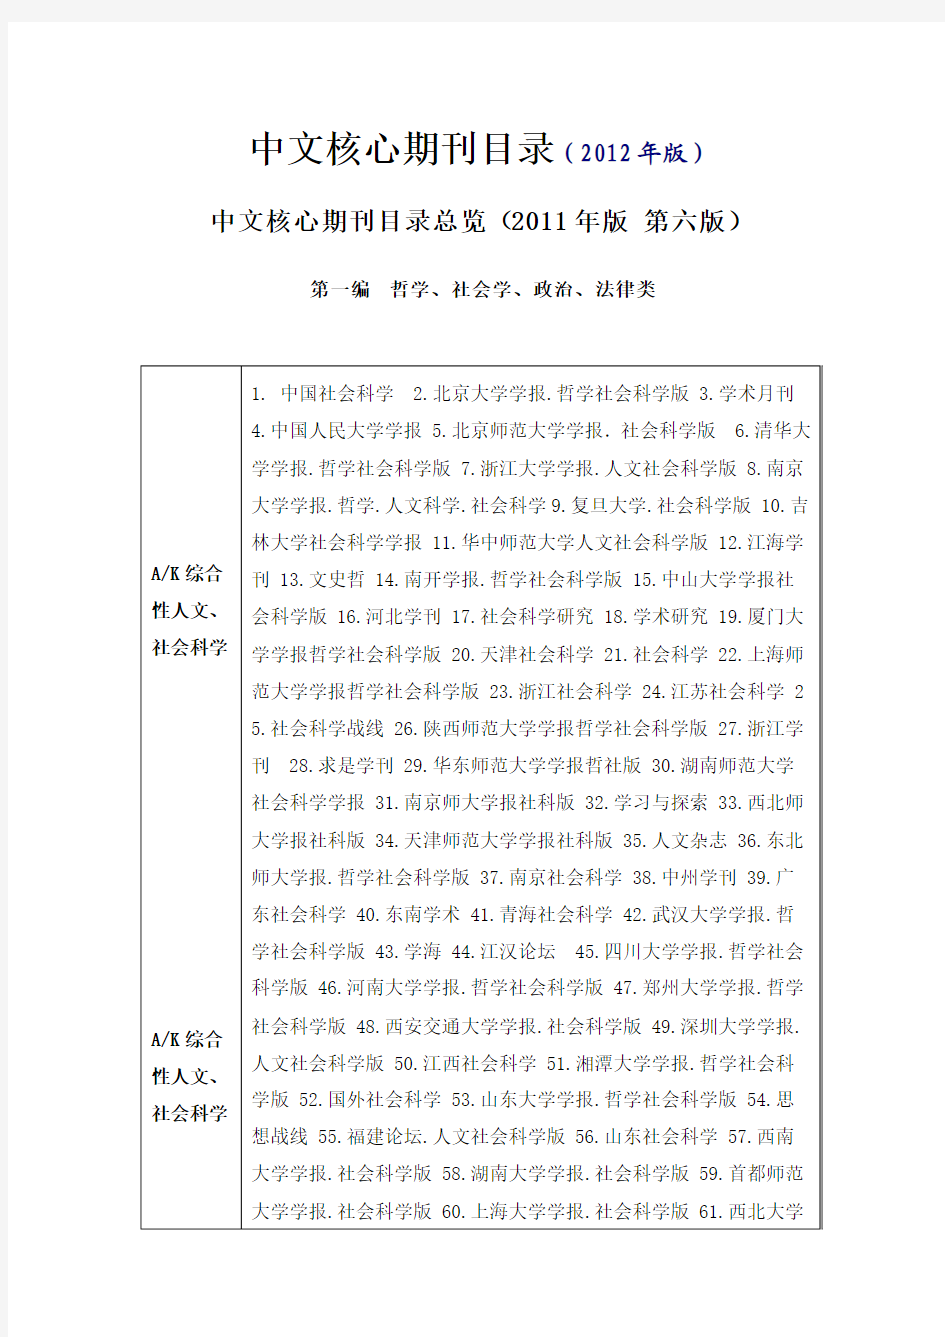 2012中文核心期刊目录(第六版)